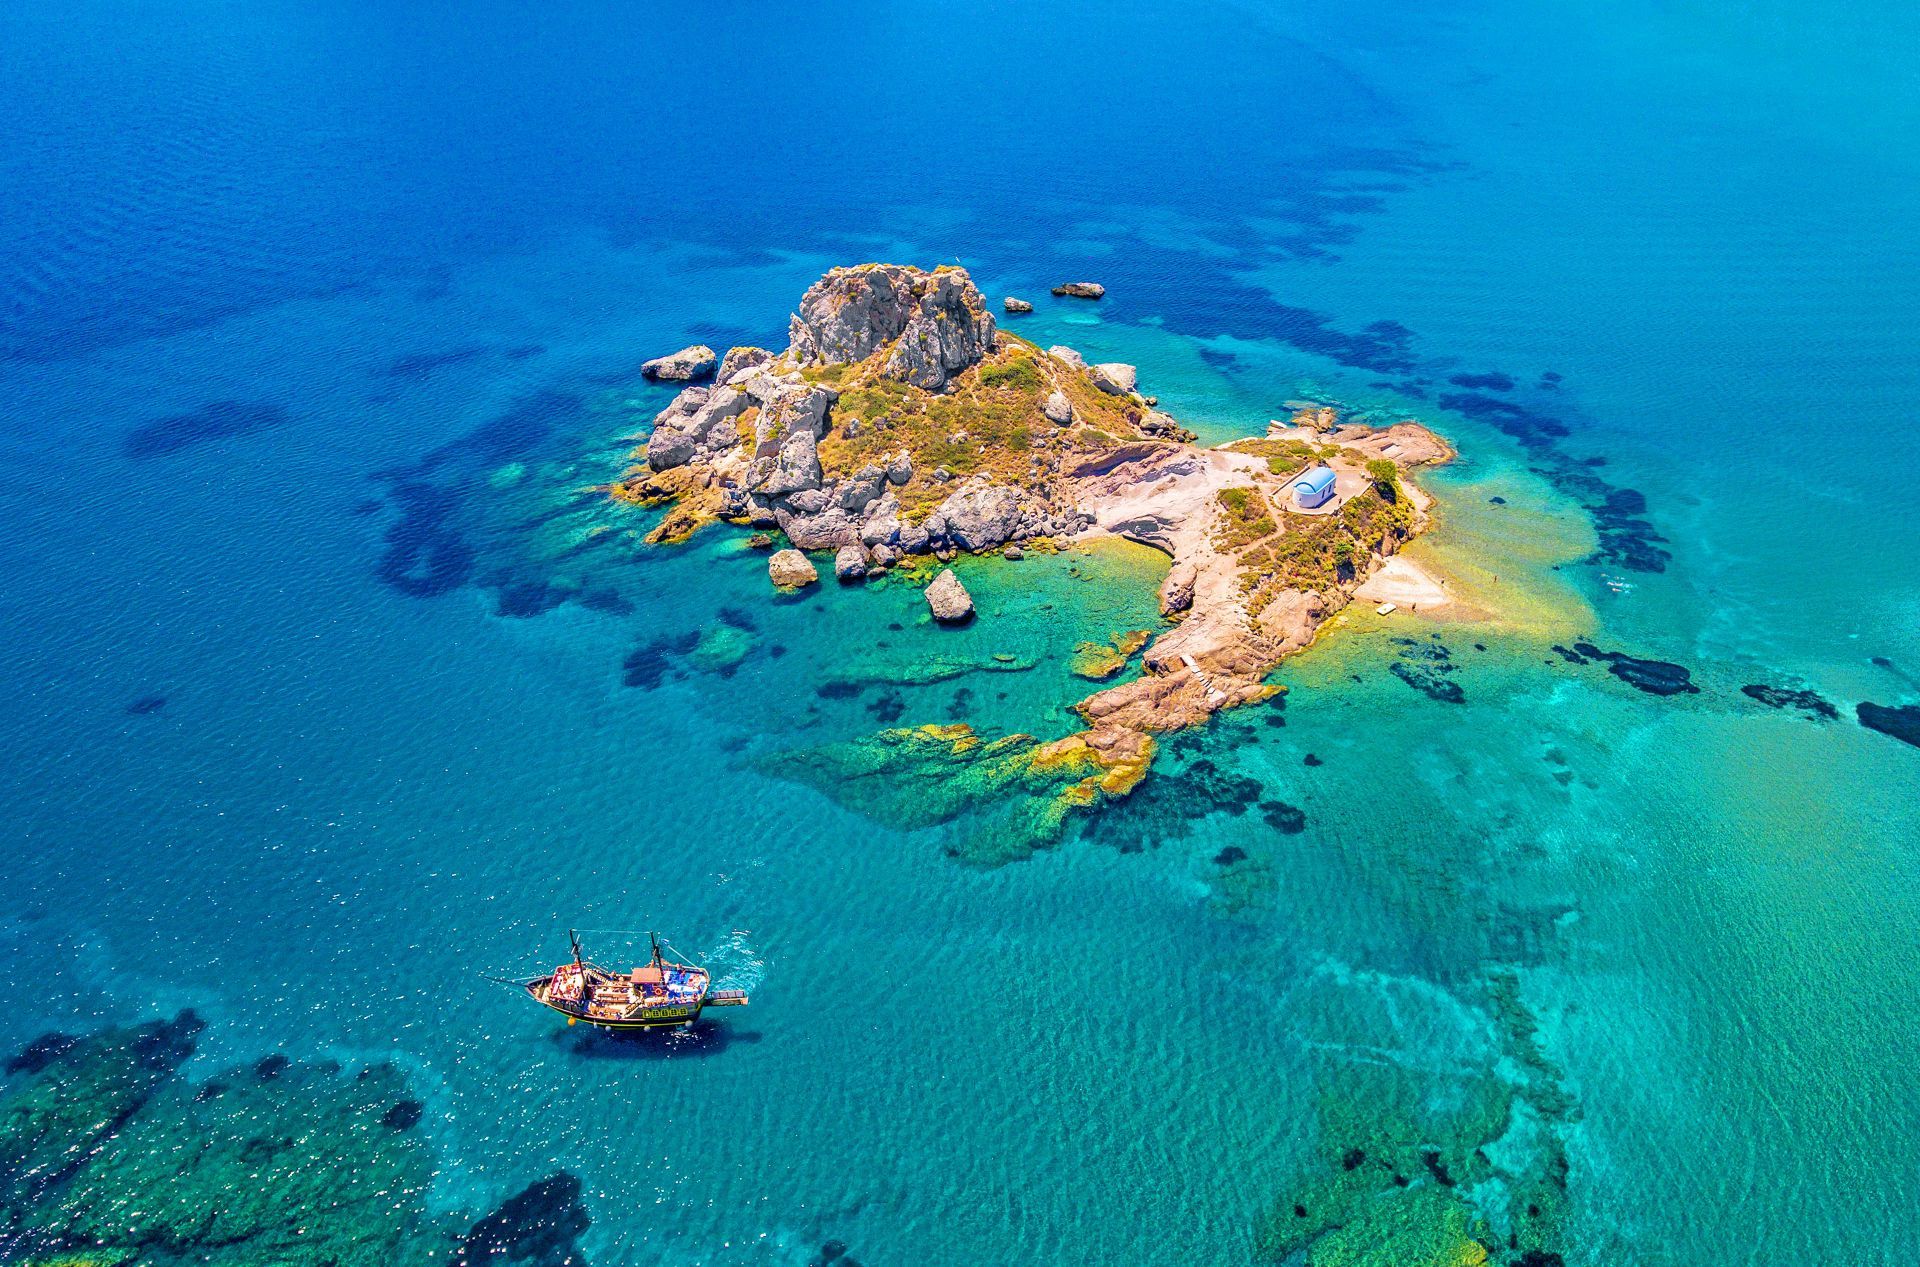 Kos adası, Kos adası nerededir, Kos adasına nasıl gidilir, Kos adasında dalış yapmak, Kos İstanköy adası, Kos adası tarihi